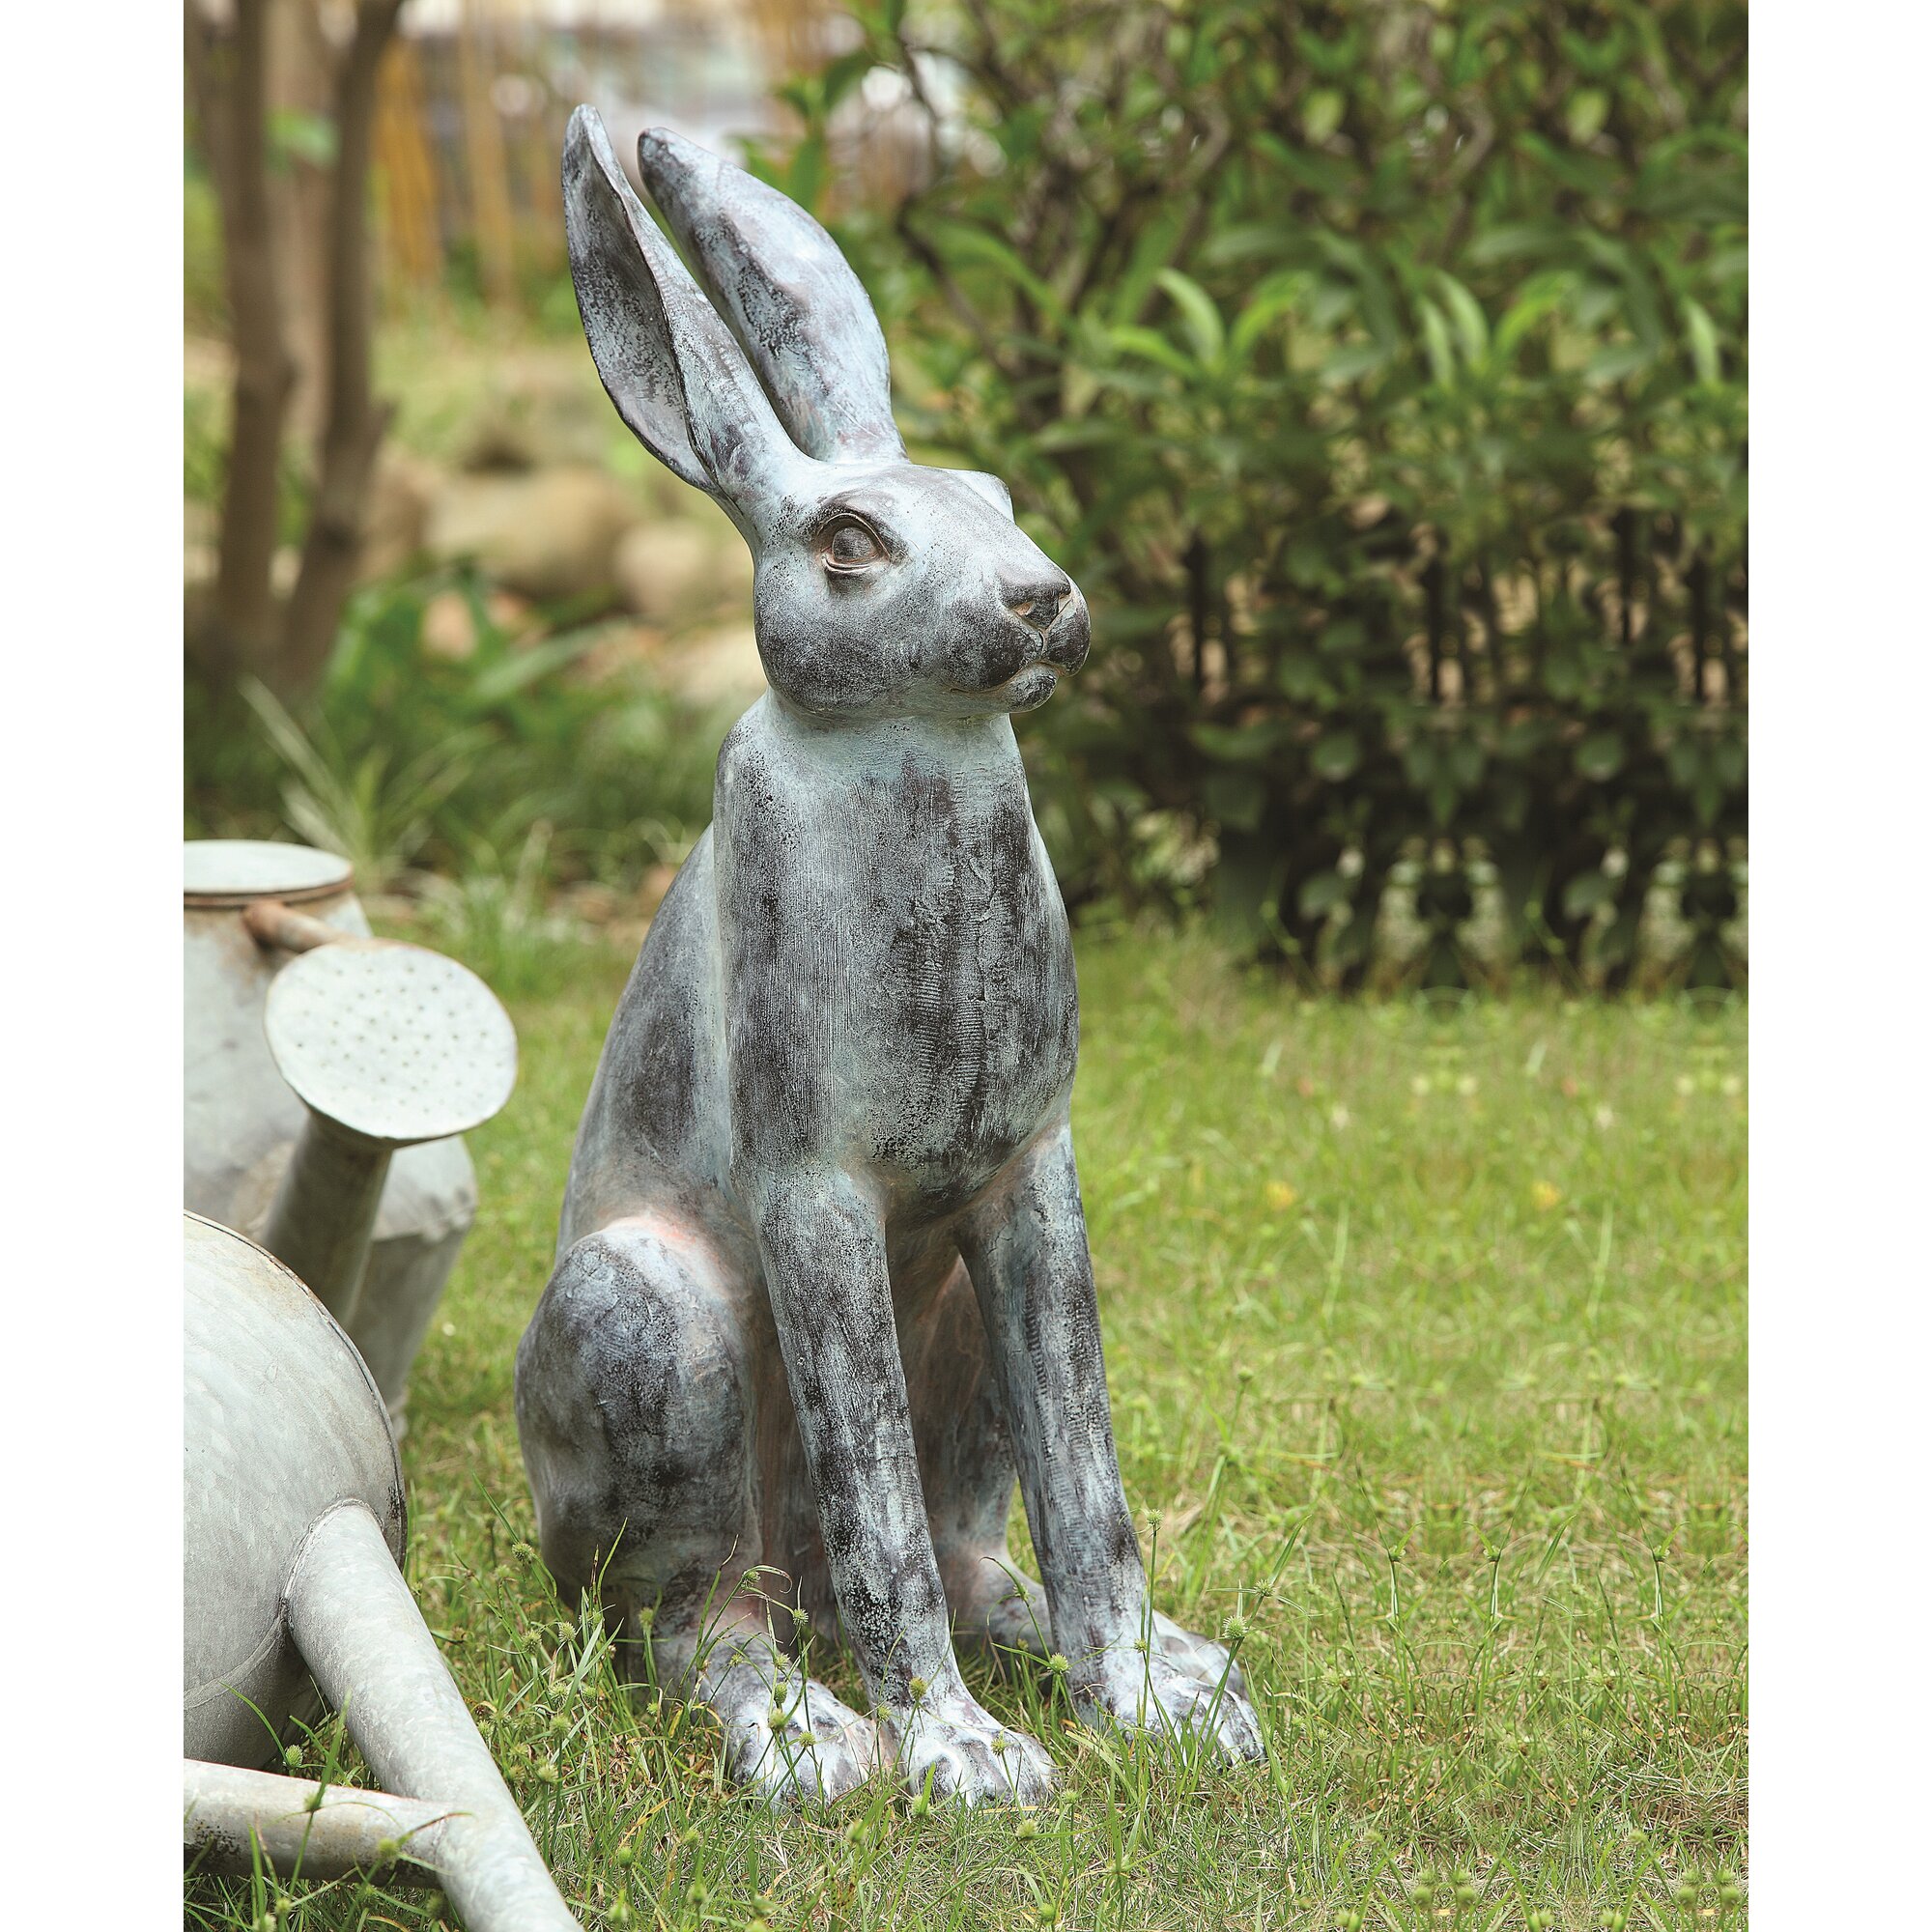 Rabbit Garden Statue & Reviews | Joss & Main